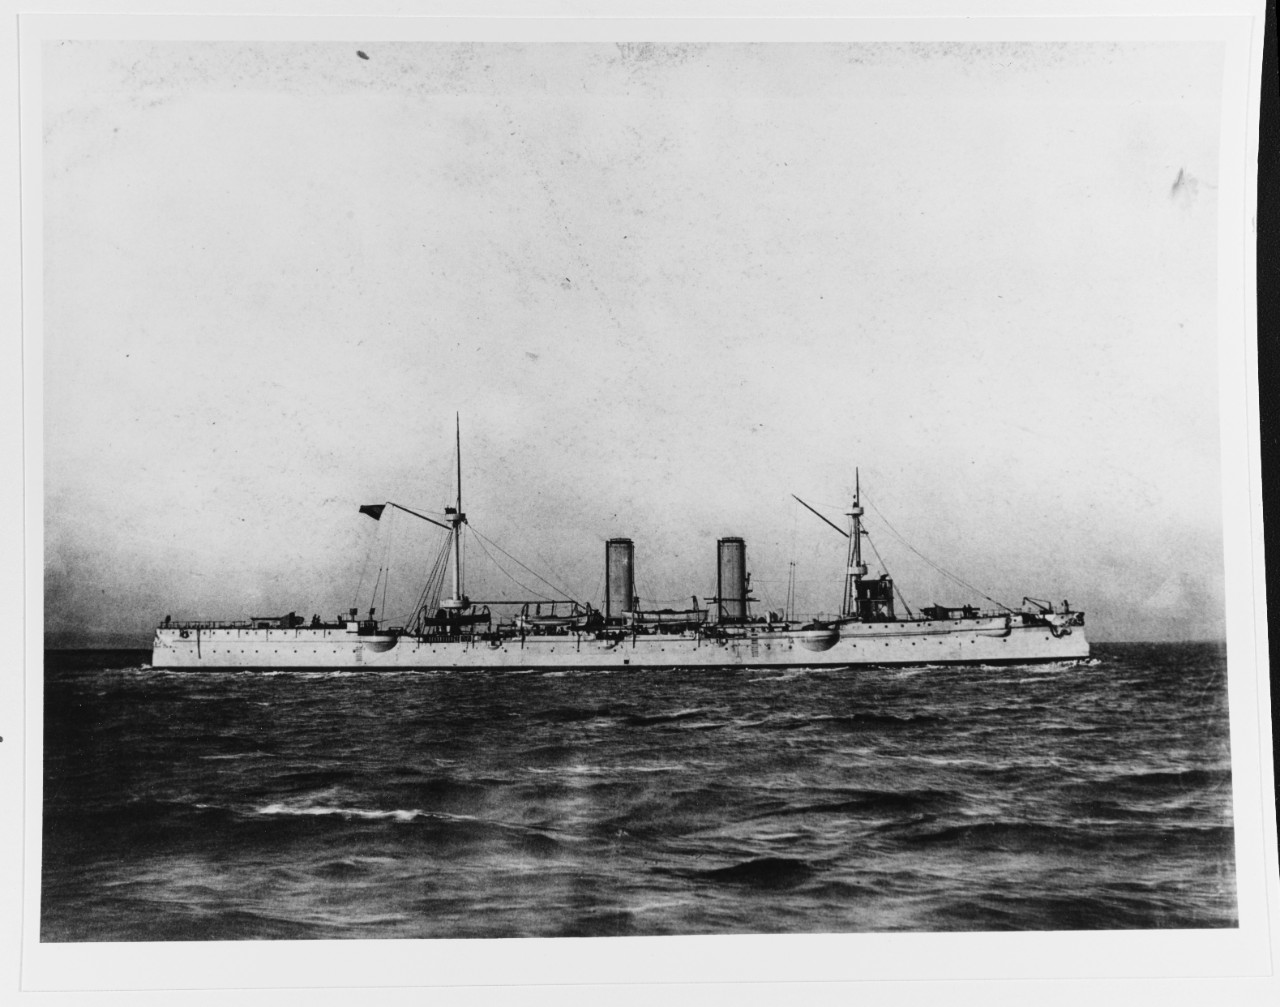 Nueve De Julio (Argentine protected cruiser, 1892-1930.)